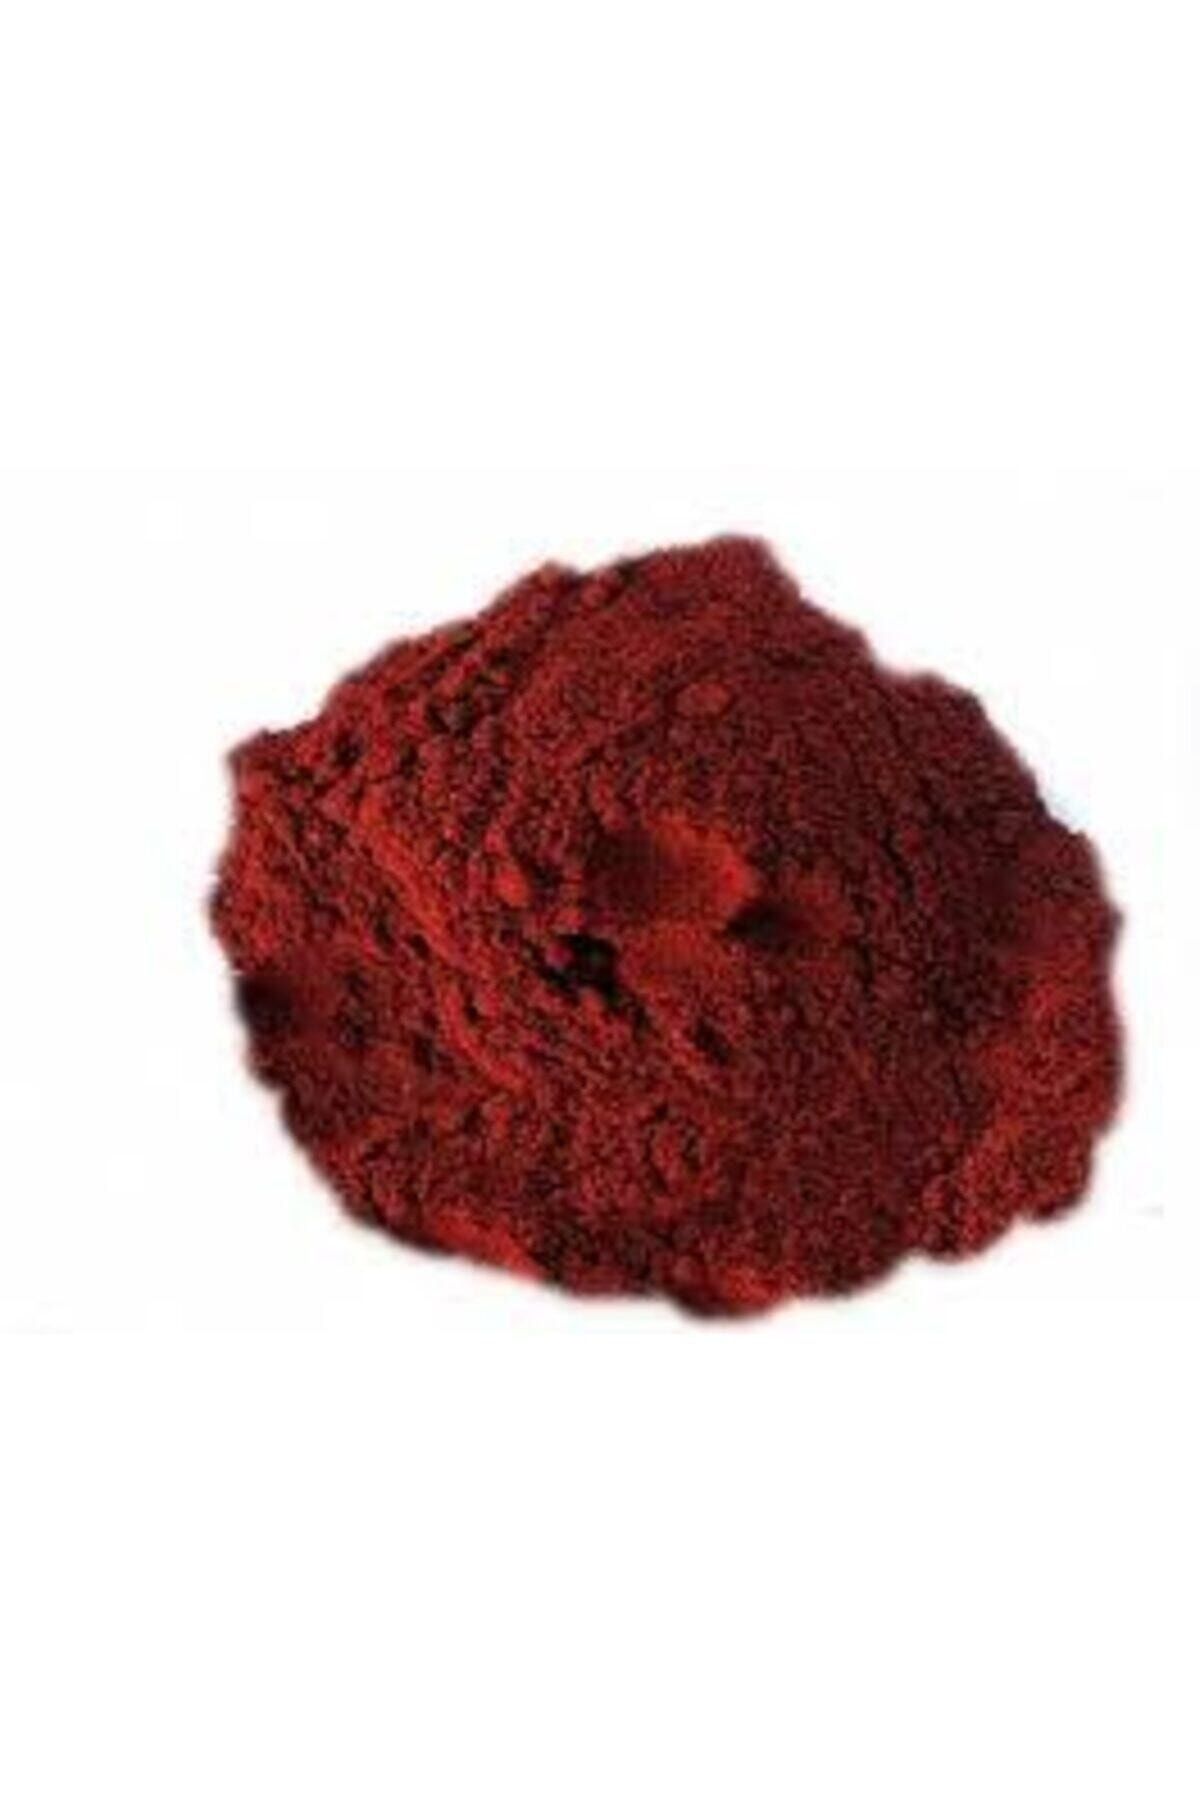 Kimyacınız Bayrak Kırmızı Gıda Boyası 1 Kilogram Allura Red